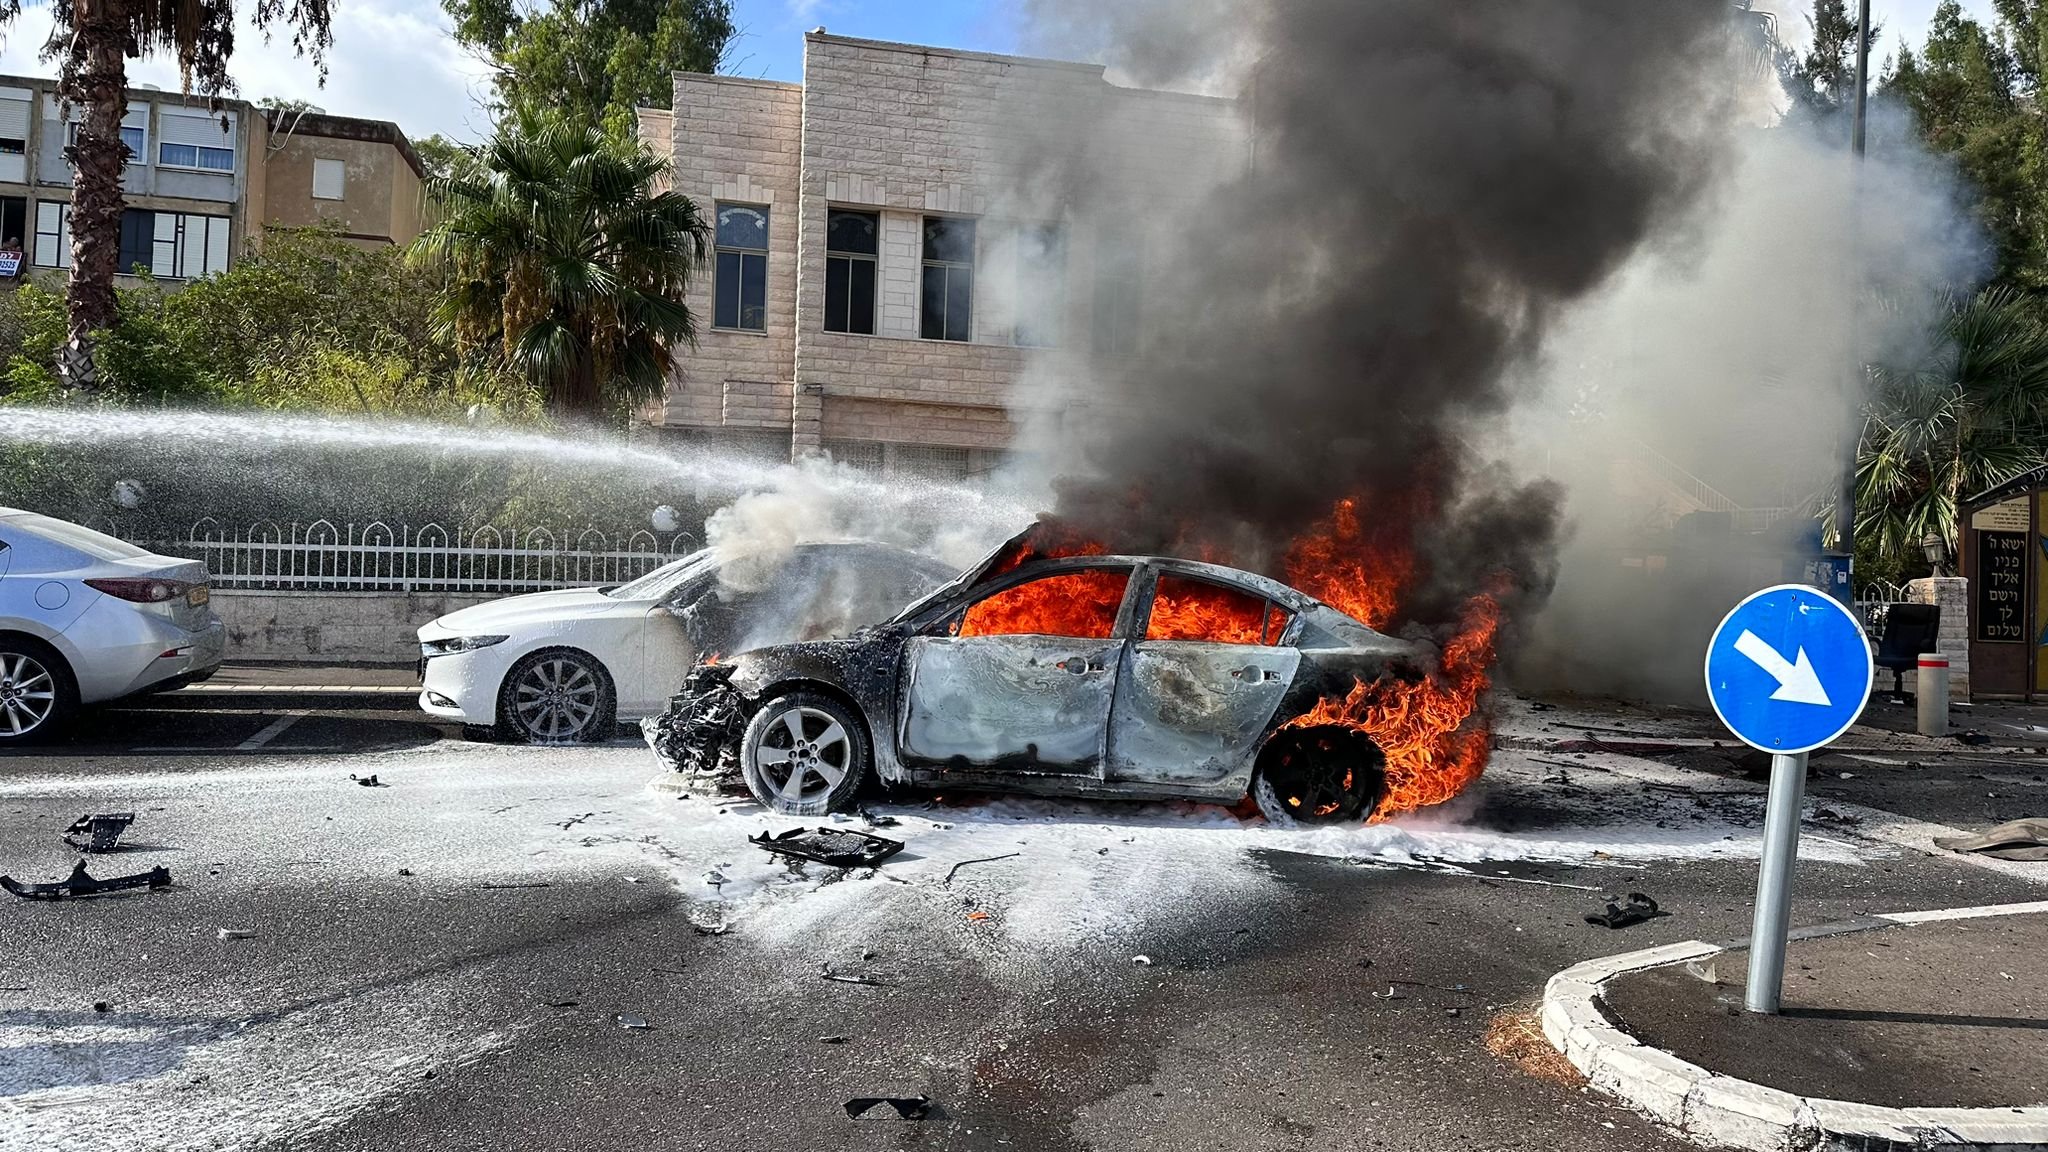 بالفيديو: انفجار مركبة في مدينة حيفا وامتداد النيران لمركبة بجانبها.-0